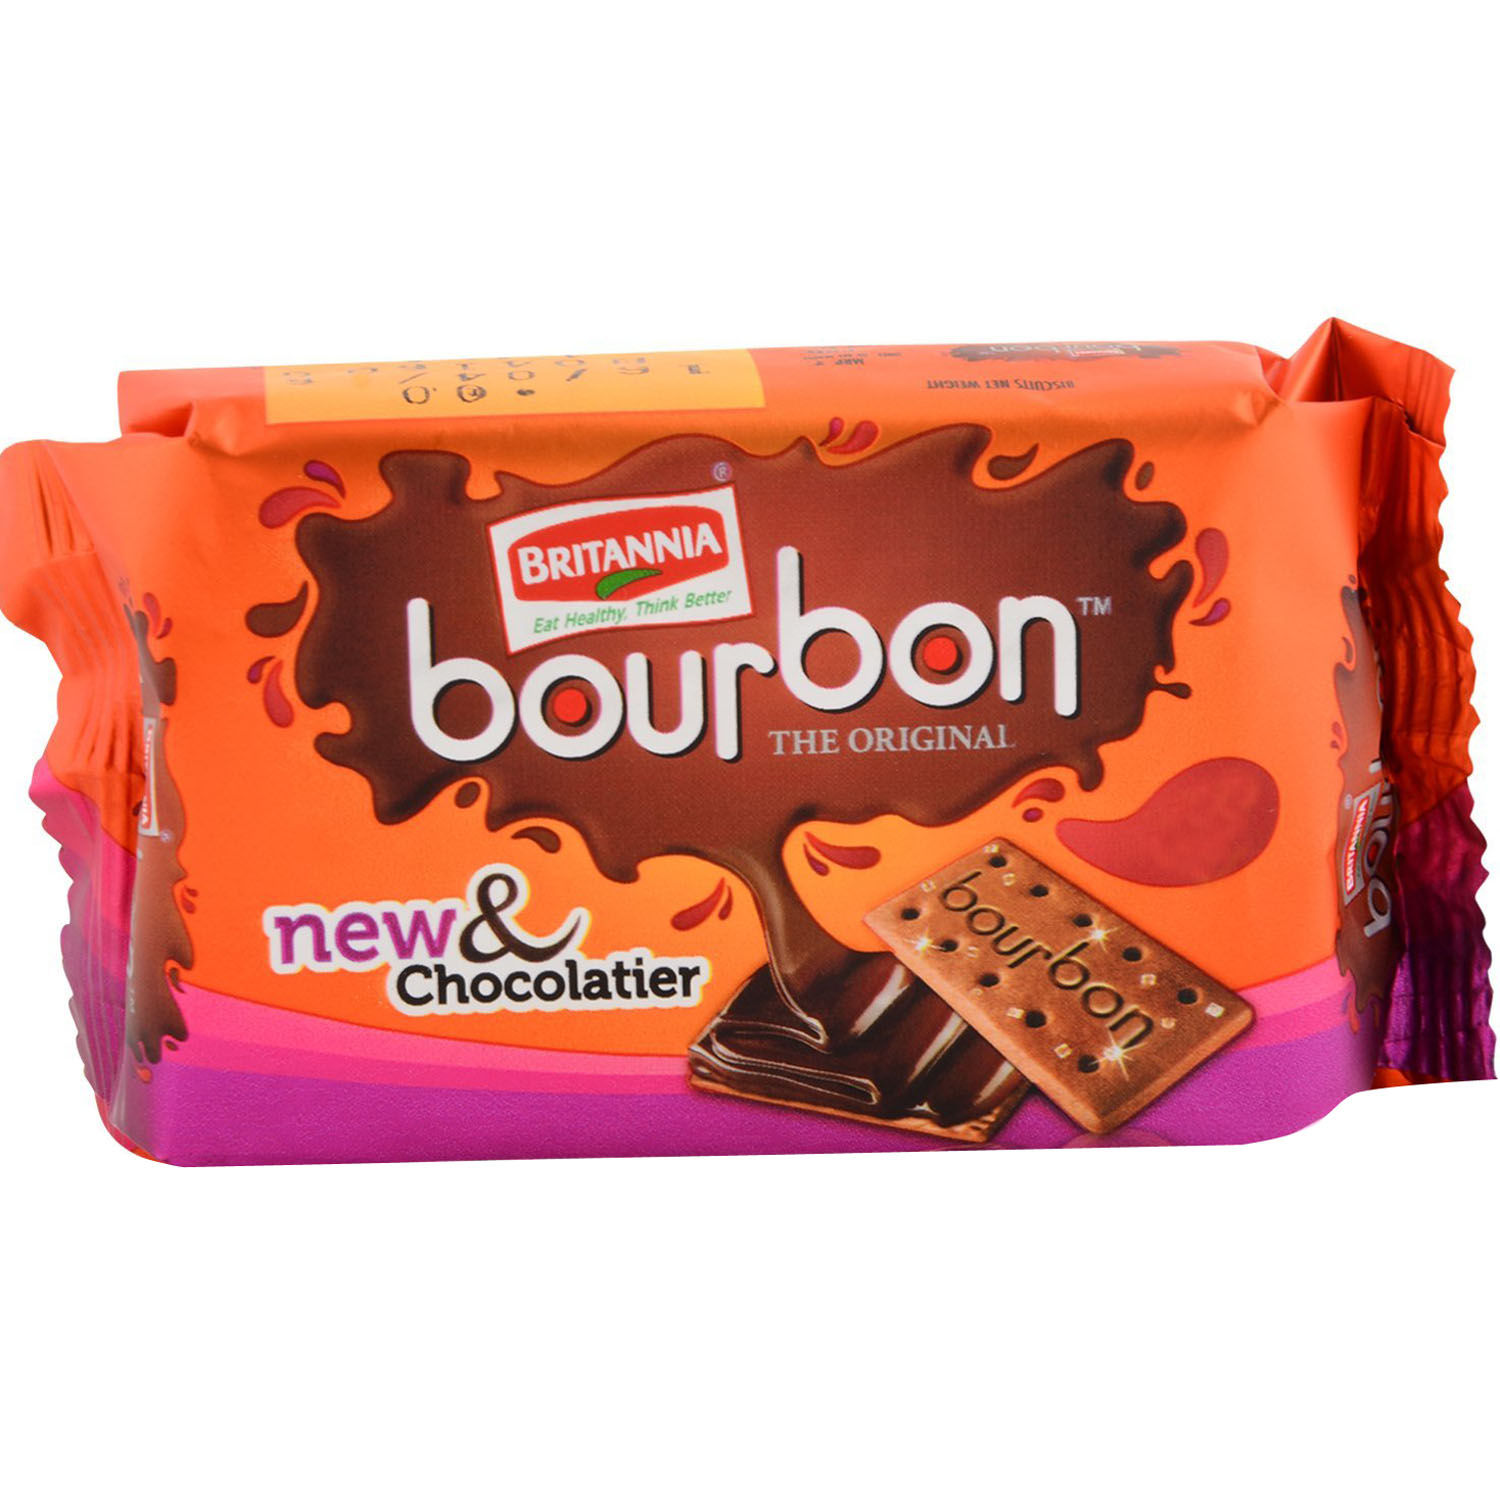 Bourbon biscuit